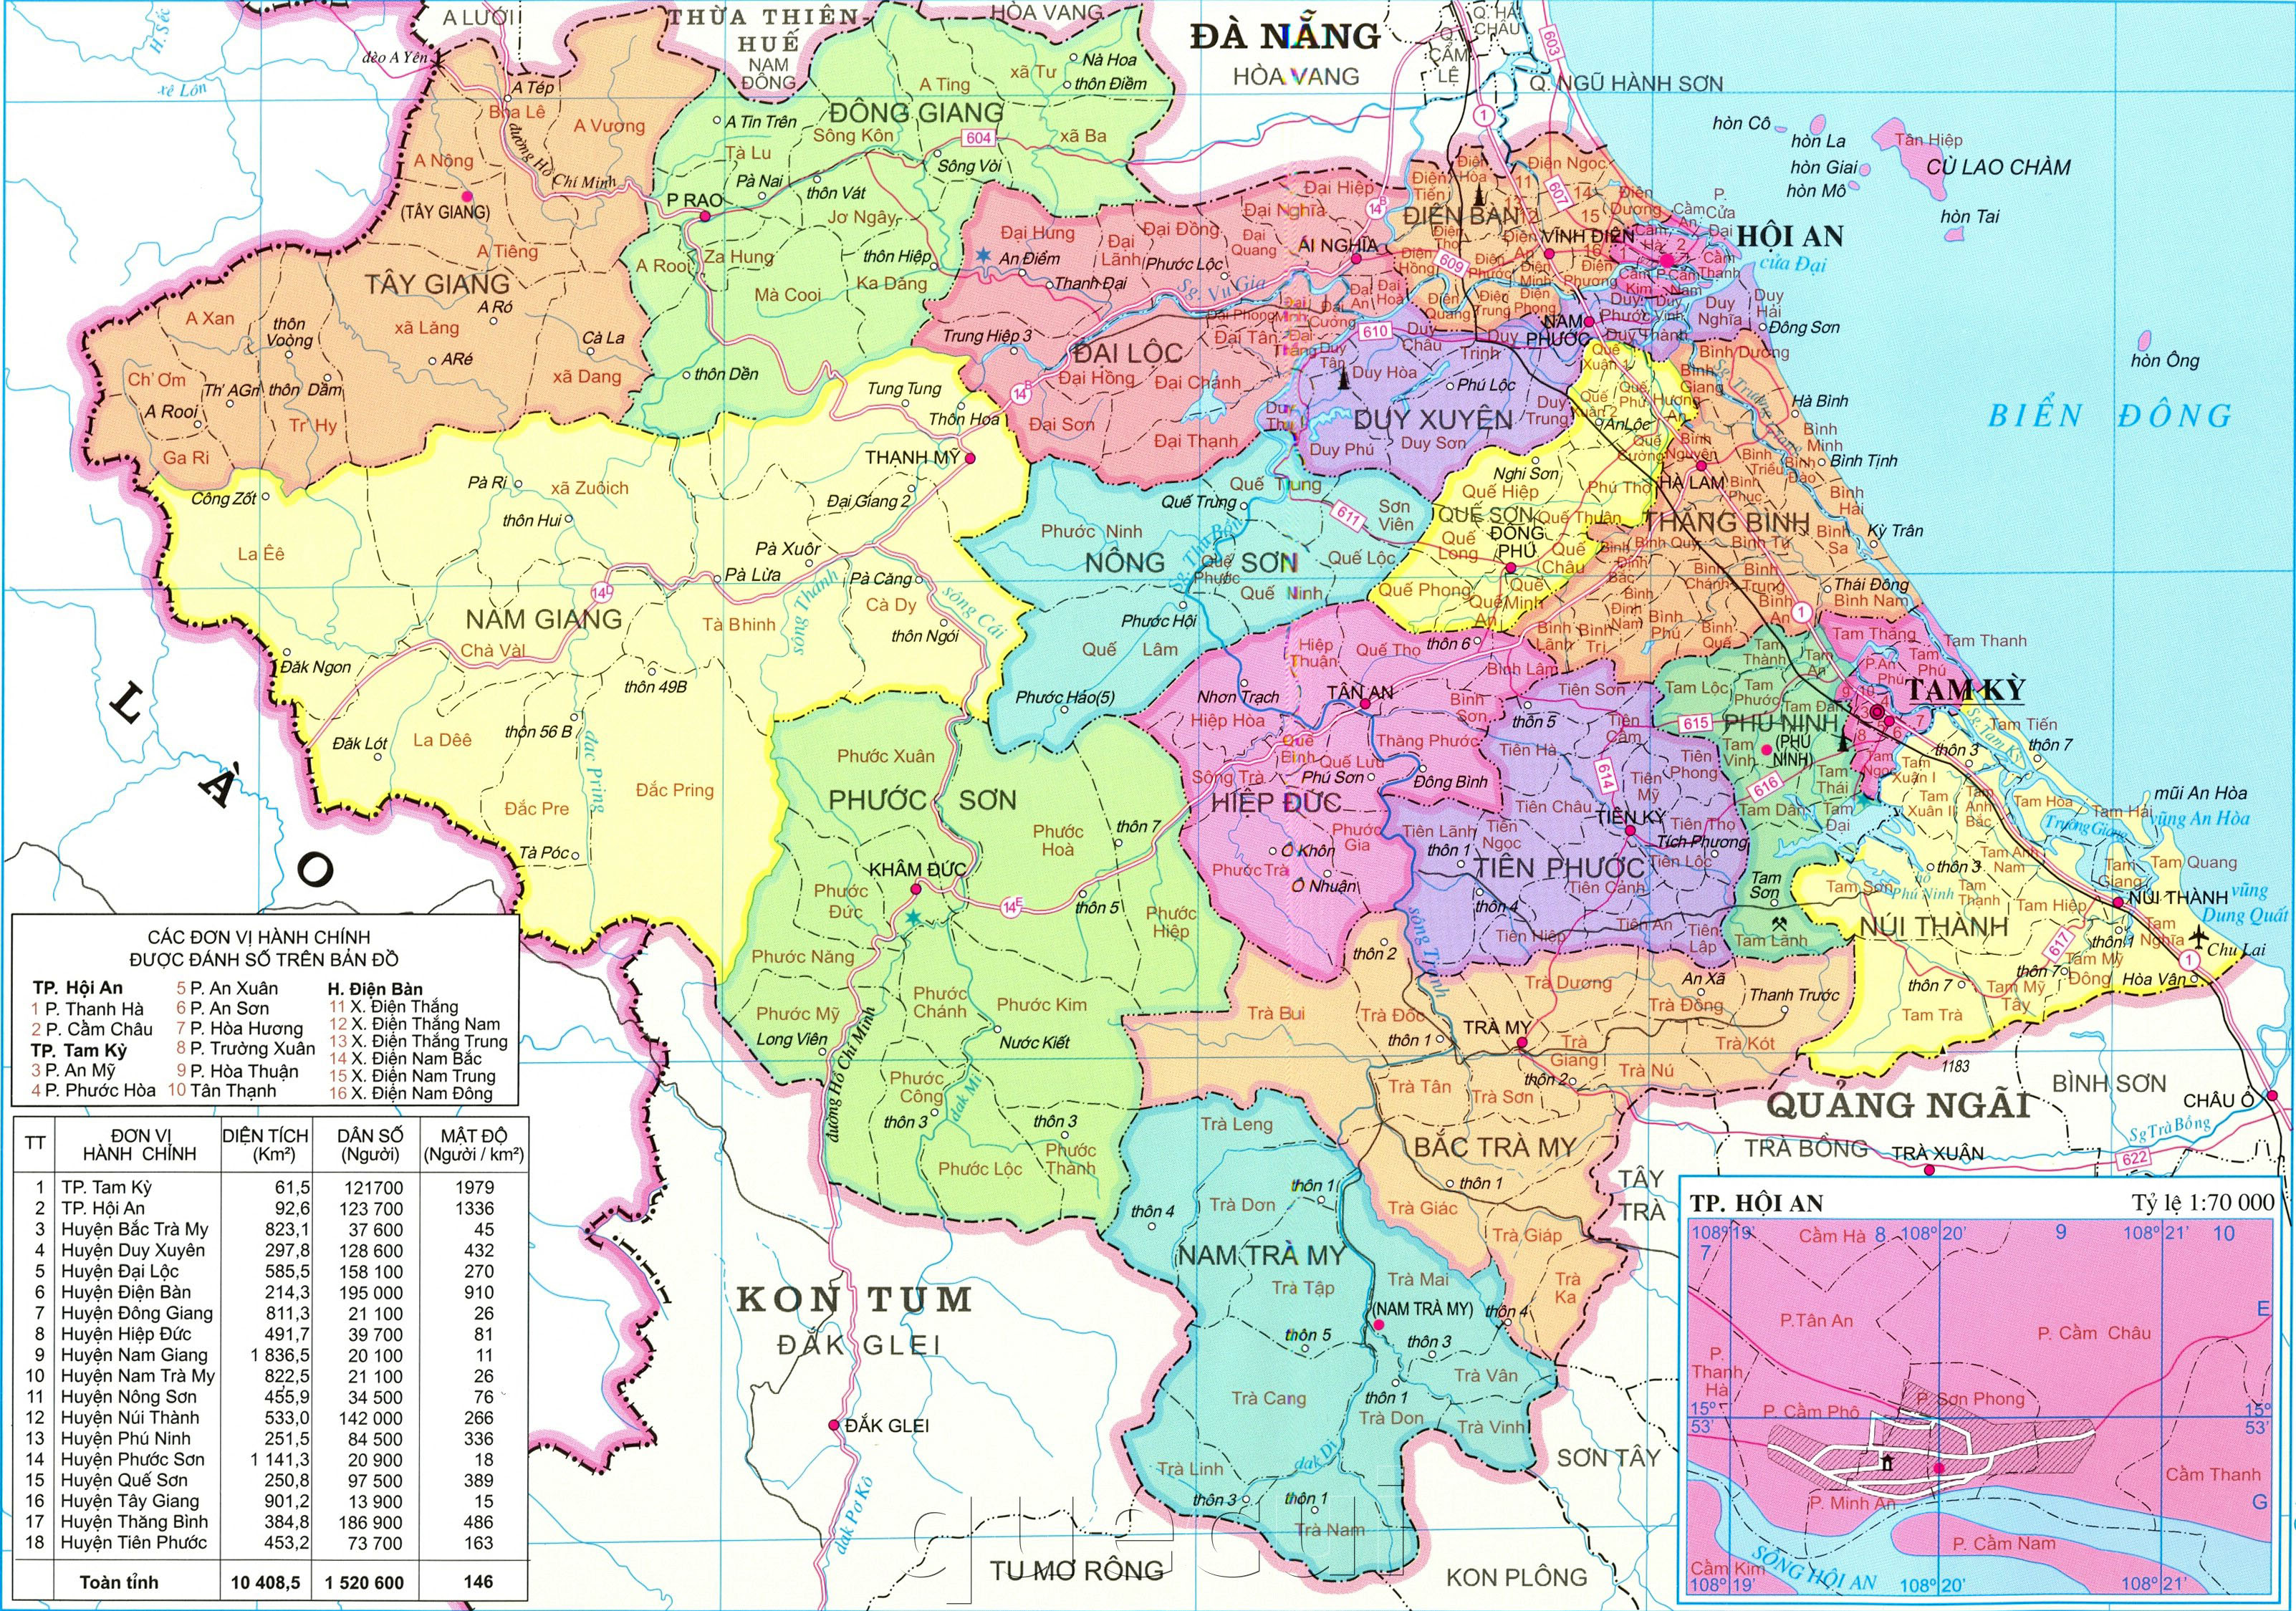 Bản đồ hành chính Quảng Nam 2024 sẽ cung cấp cho người dân những thông tin quan trọng hơn về hành chính địa phương. Điều này sẽ giúp cho việc tìm kiếm các dịch vụ và cơ quan chính quyền trở nên dễ dàng hơn bao giờ hết.